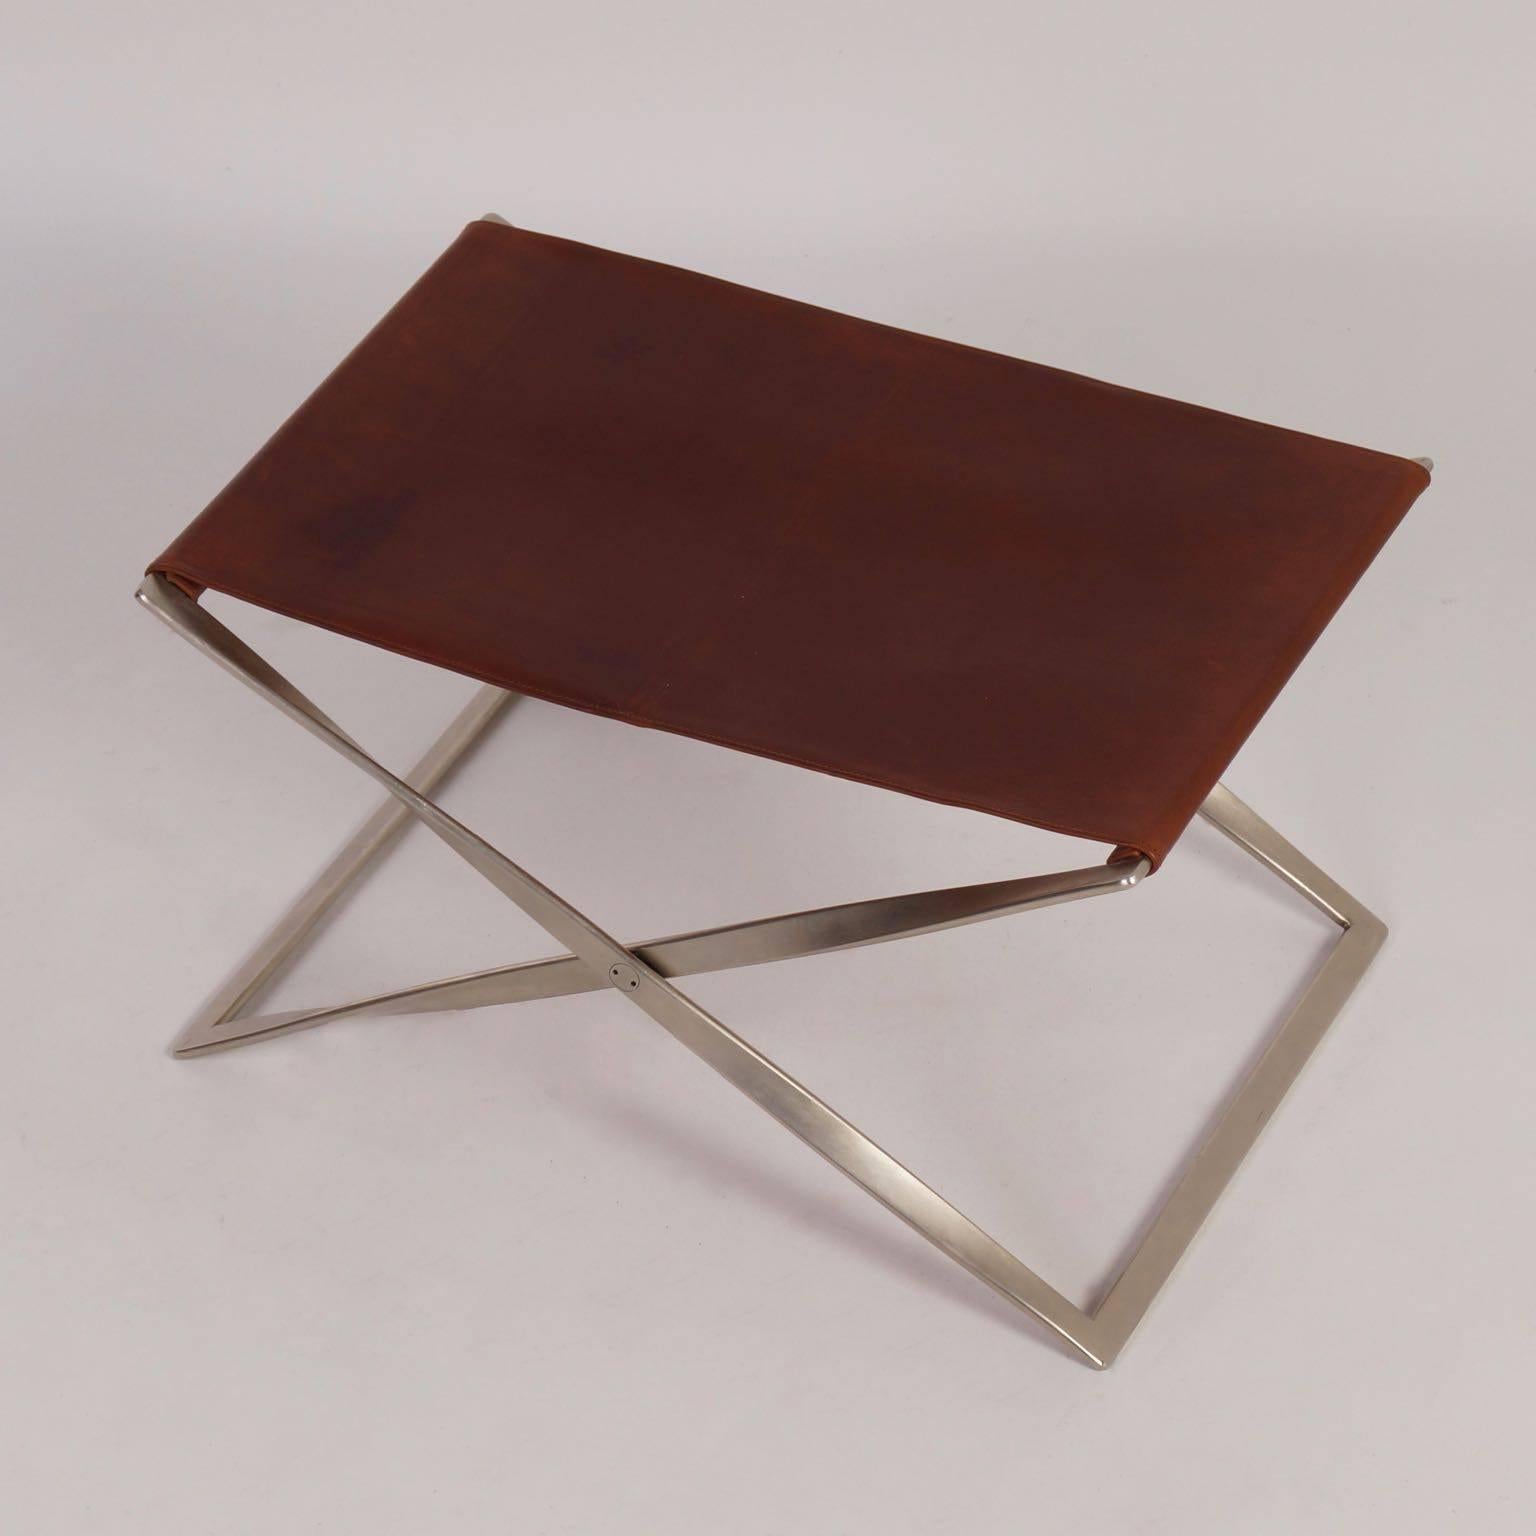 Mid-Century Modern Poul Kjærholm PK 91 Folding Chair by E. Kold Christensen A/S, Denmark, 1961 For Sale